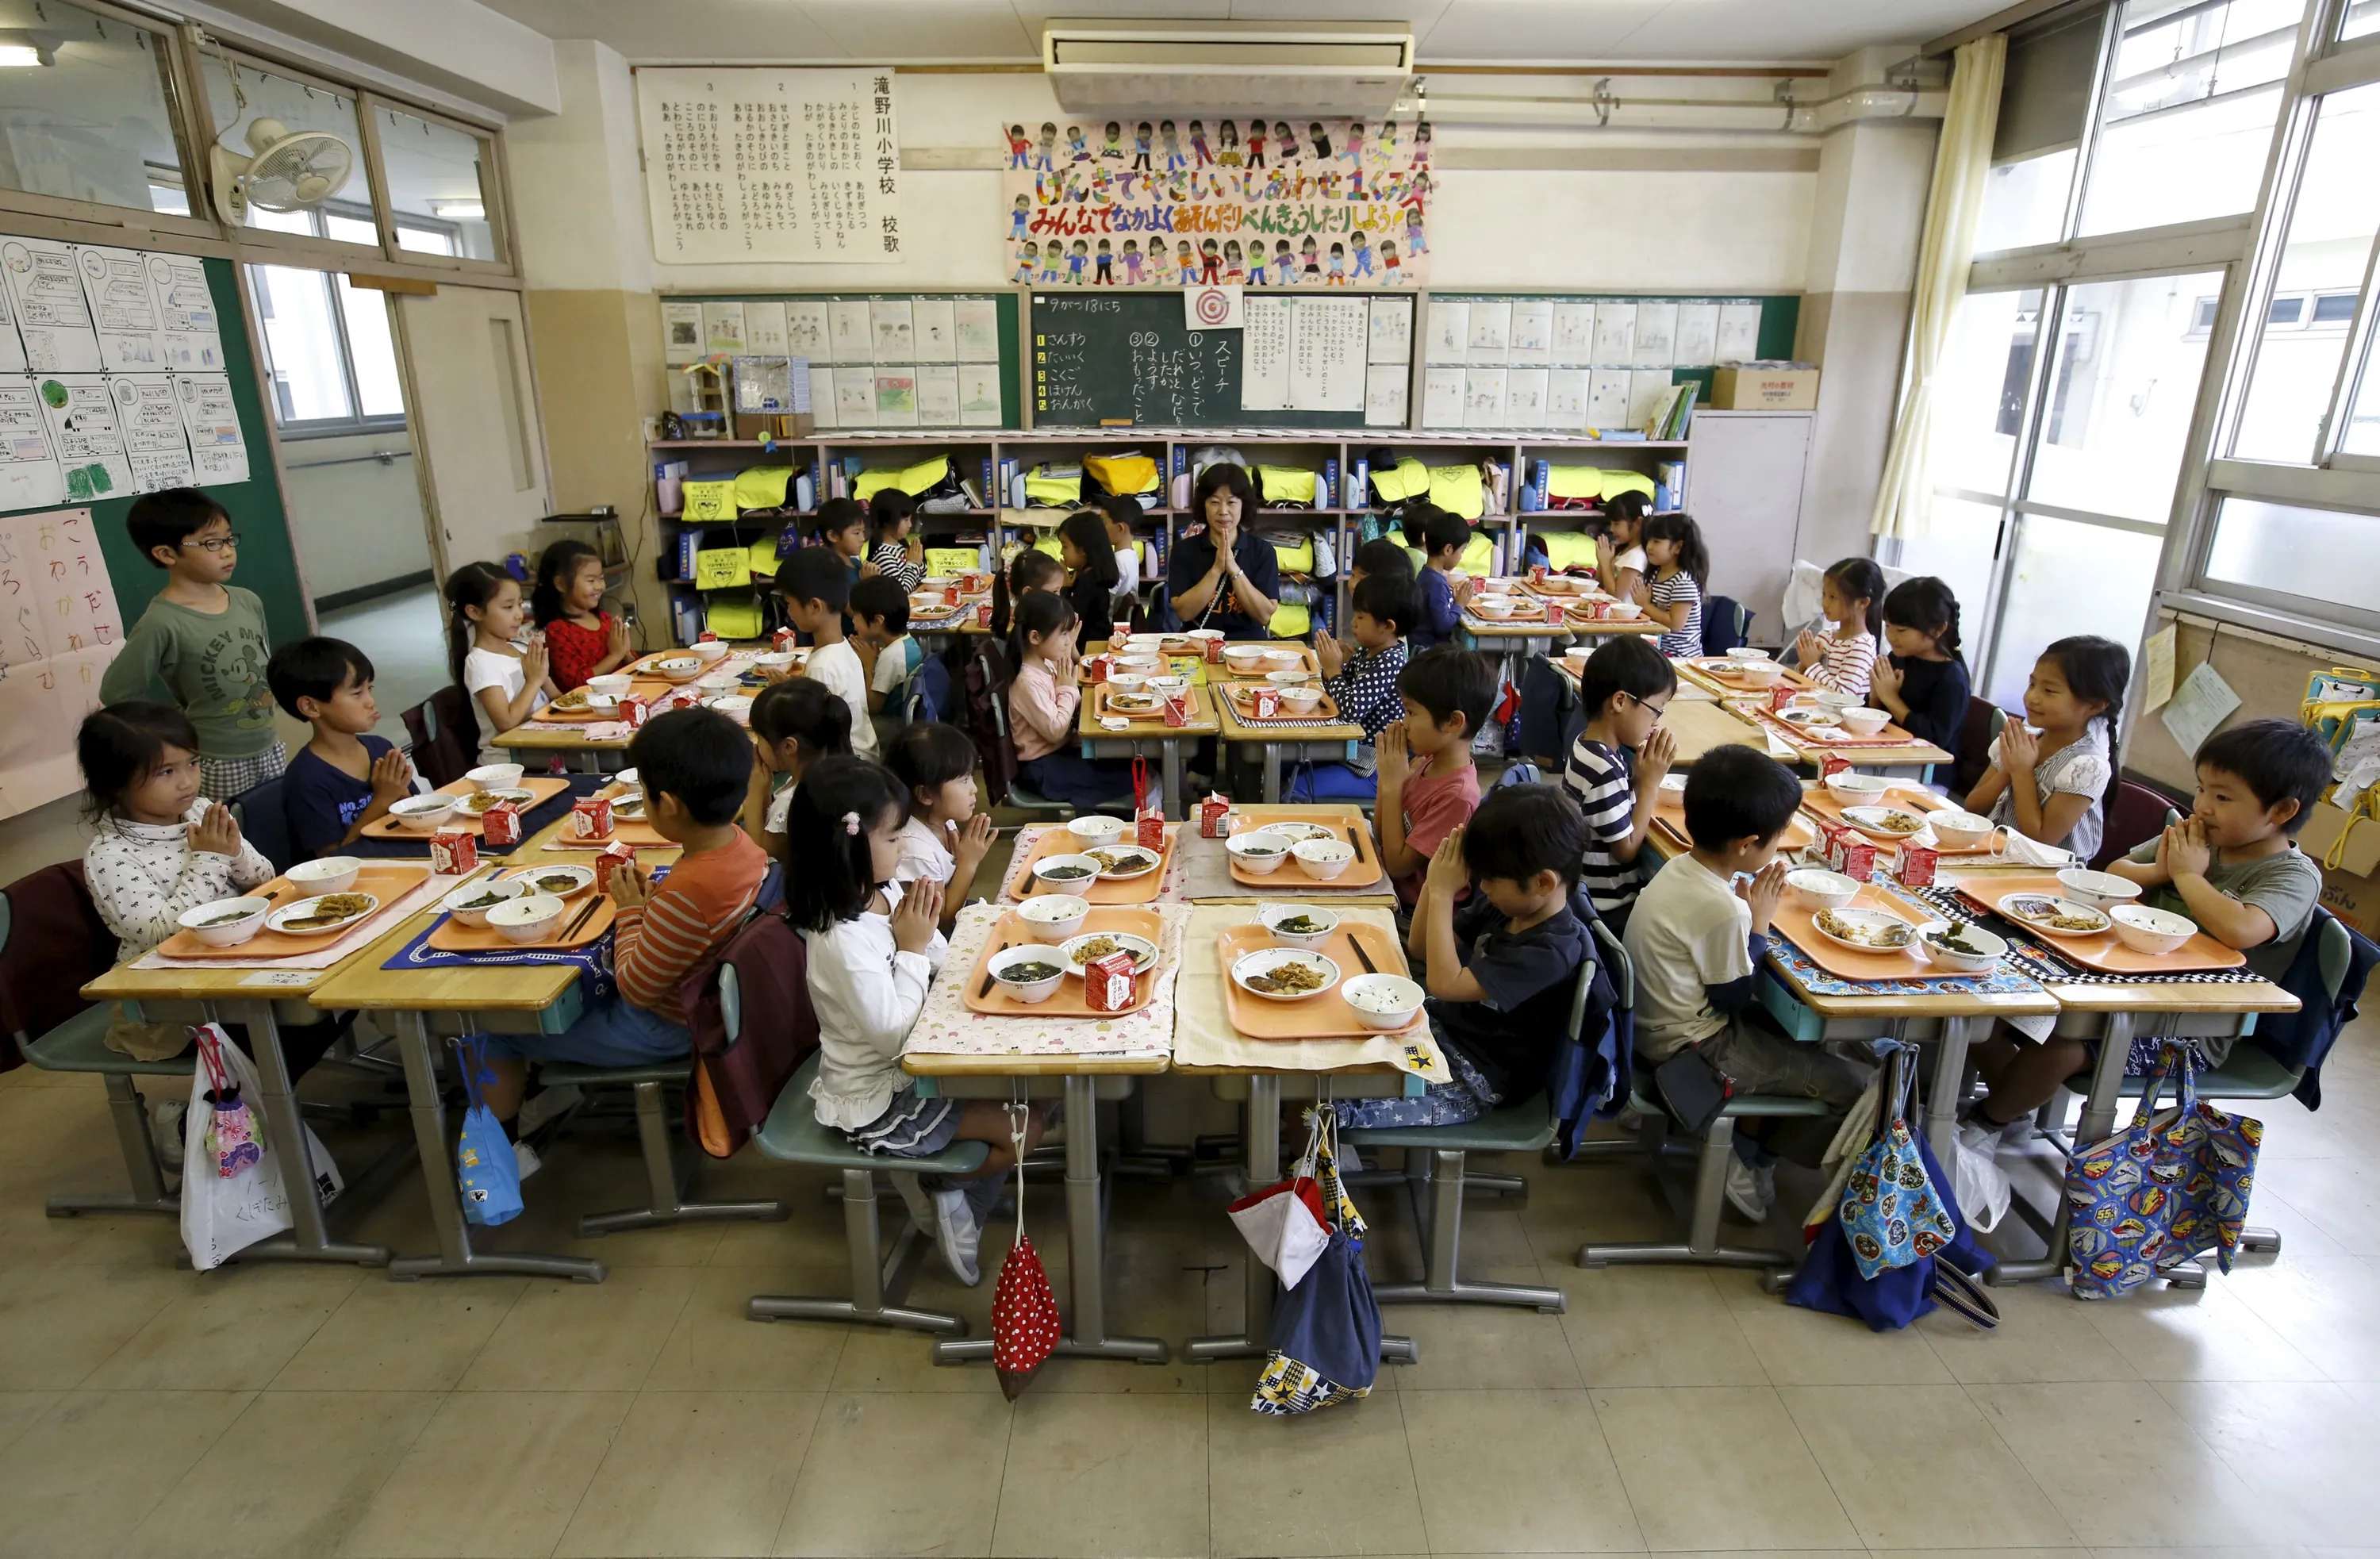 Японские старшие школы. Школа в Японии начальная школа. Школа Сасебо Япония. Япония школа столовая. Столовые в японских школах.